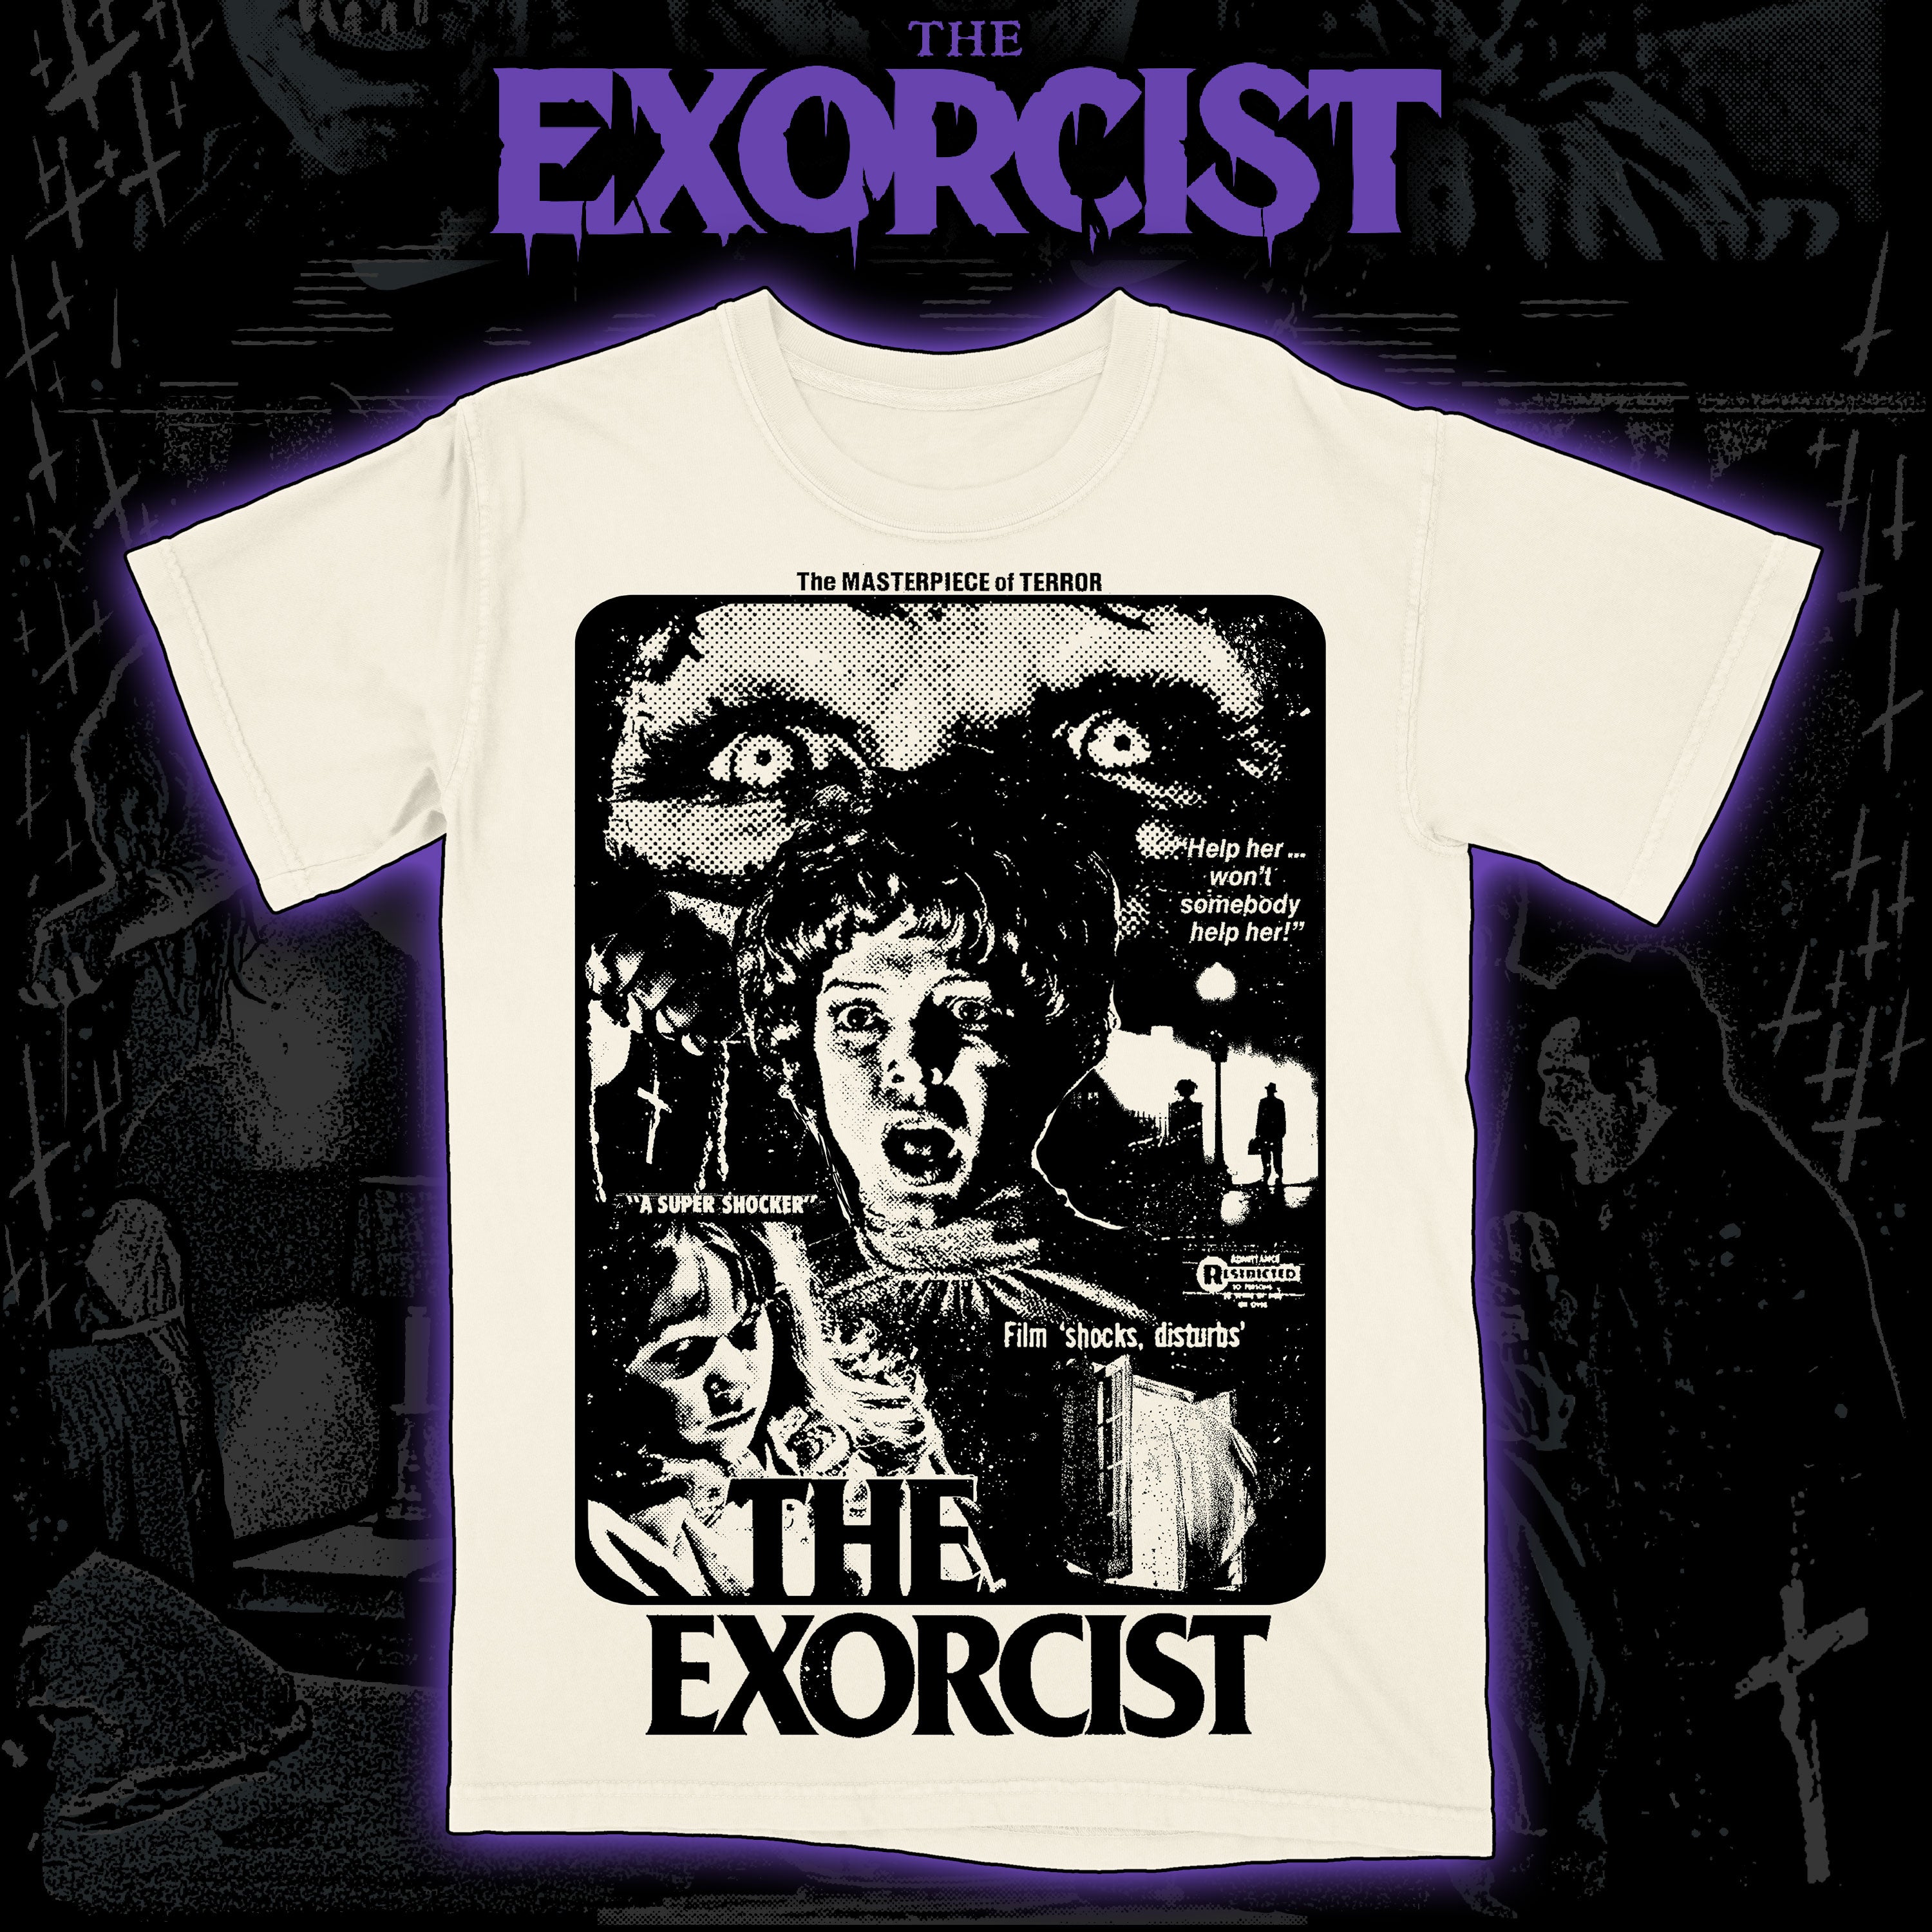 The Exorcist "Masterpiece of Terror" Premium tee